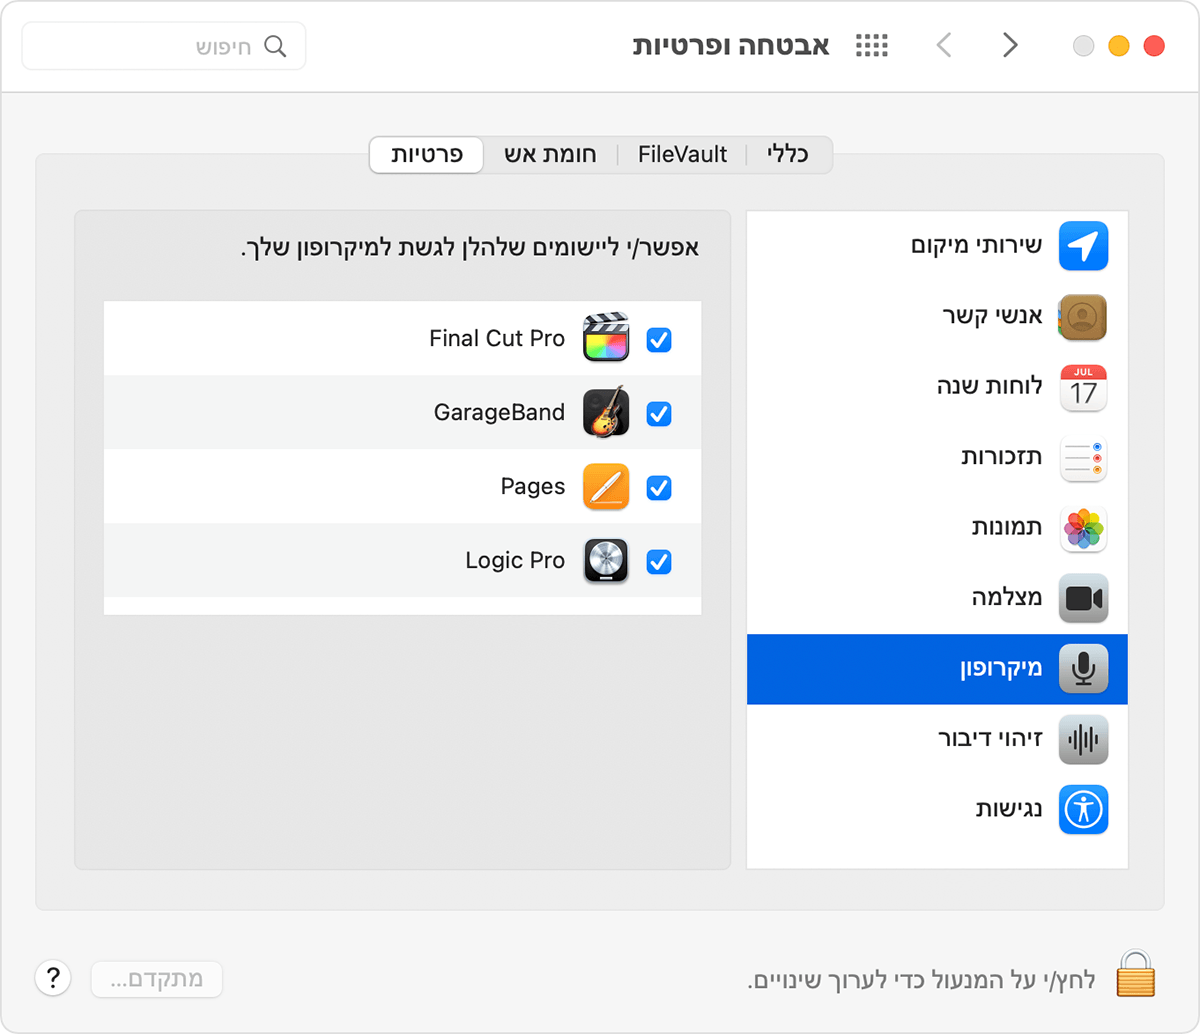 הכרטיסיה 'פרטיות' בהעדפות 'אבטחה ופרטיות' של macOS כאשר האפשרות 'מיקרופון' נבחרה